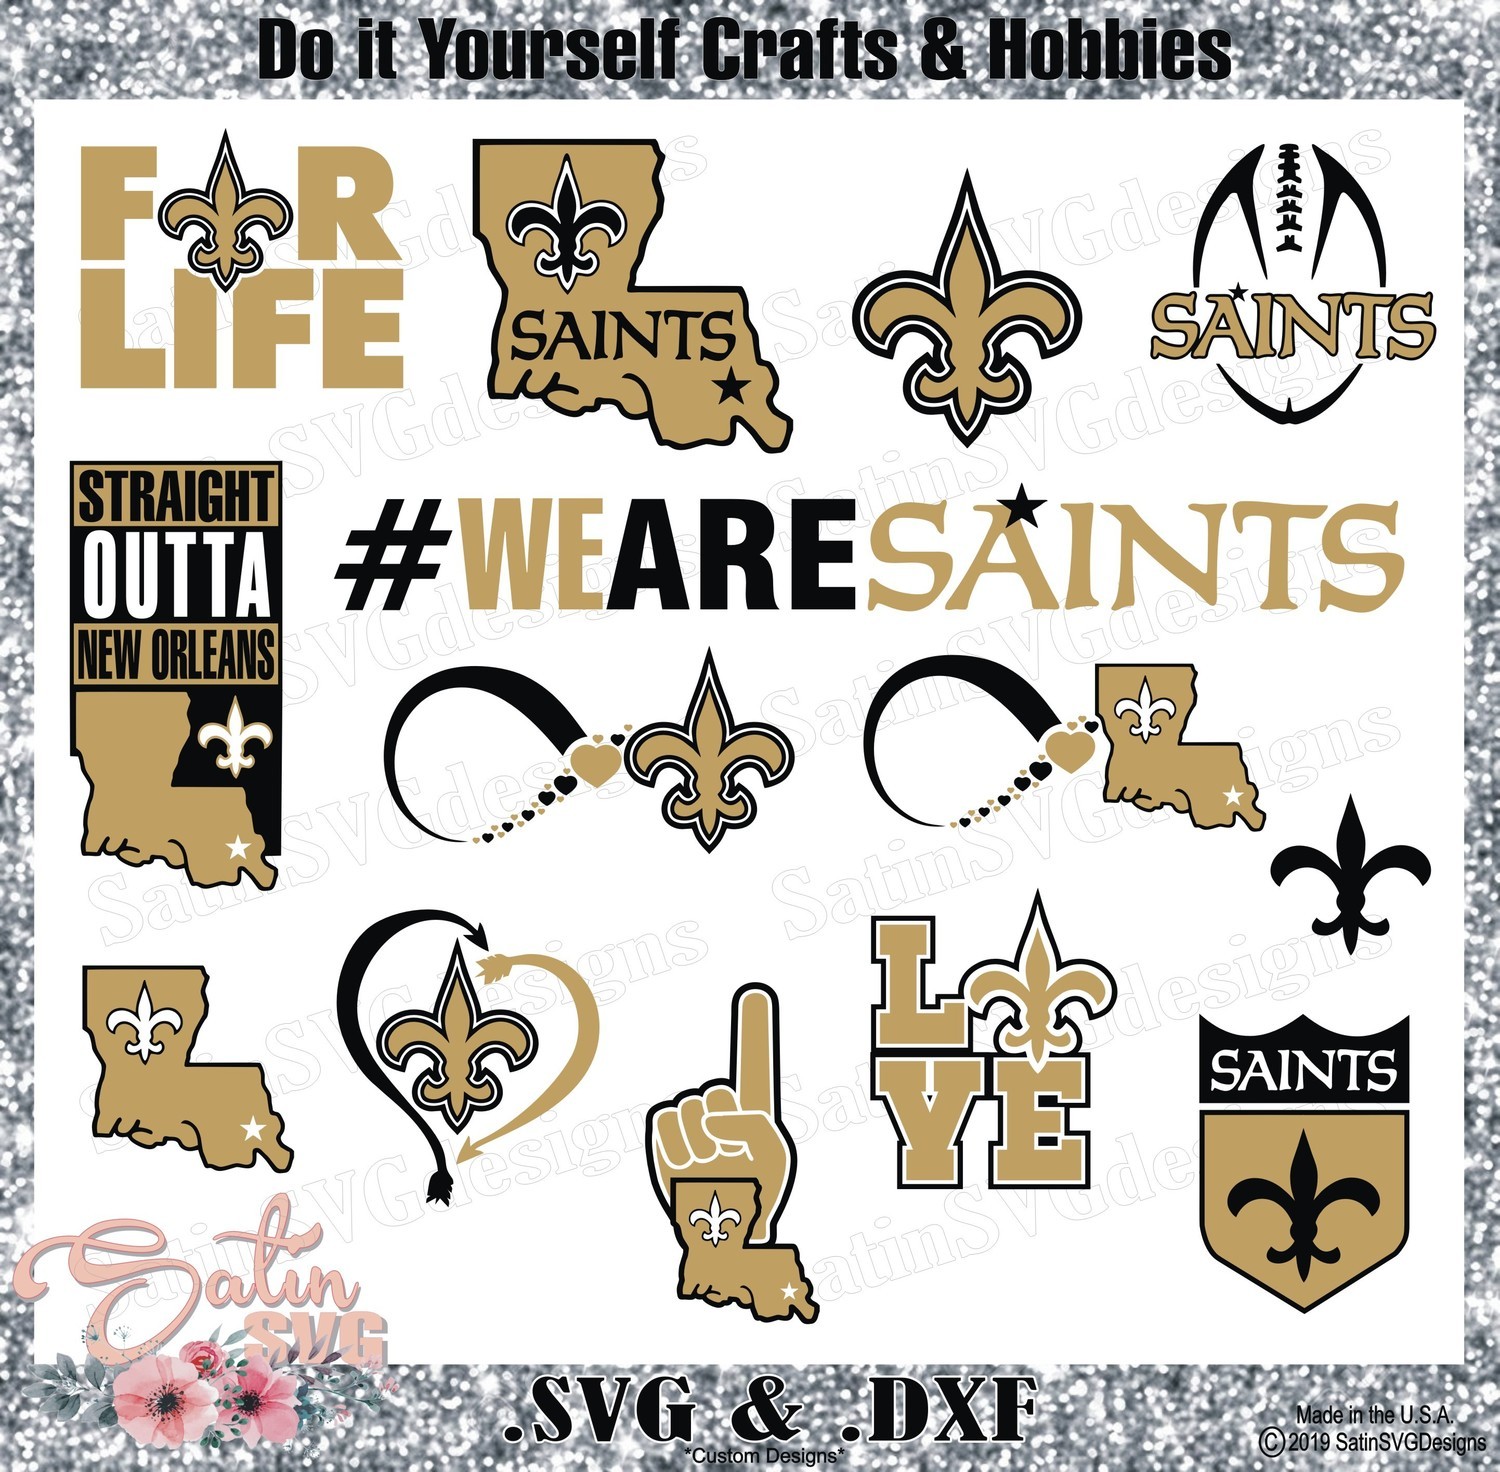 New Orleans Saints Set Design SVG Files, Cricut, Silhouette Studio, Digital Cut Files